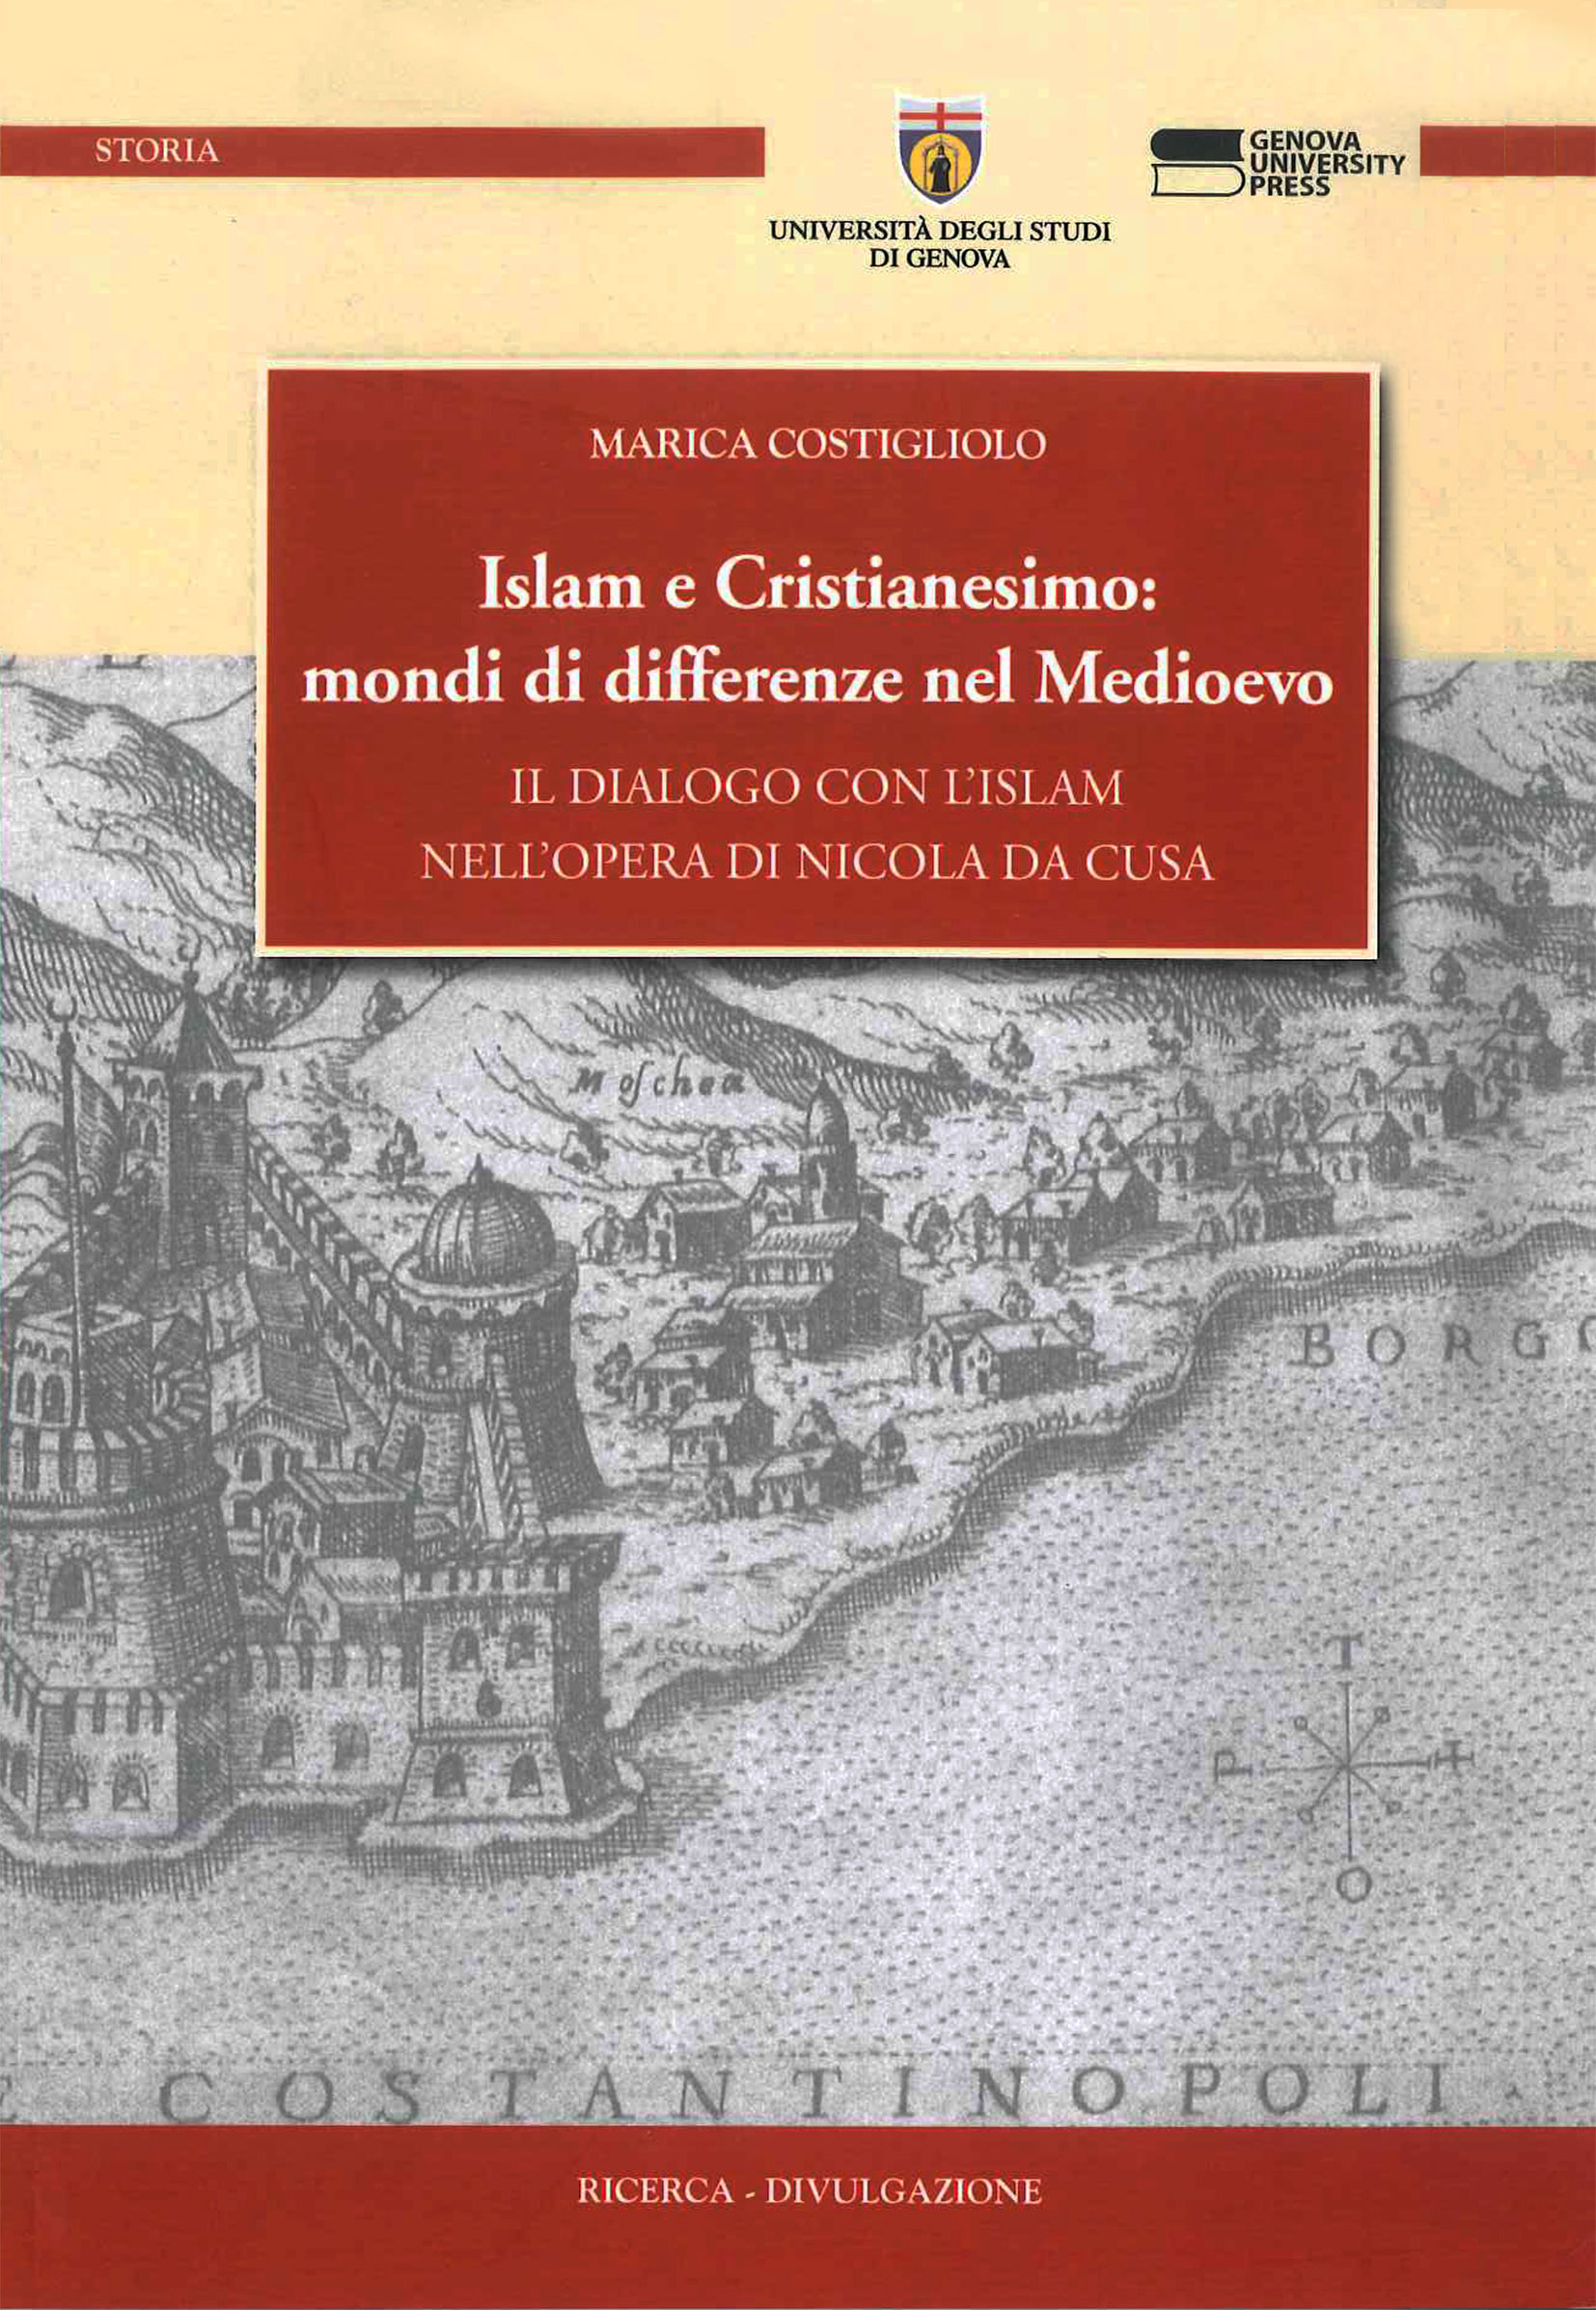 Islam e Cristianesimo: mondi di differenze nel Medioevo